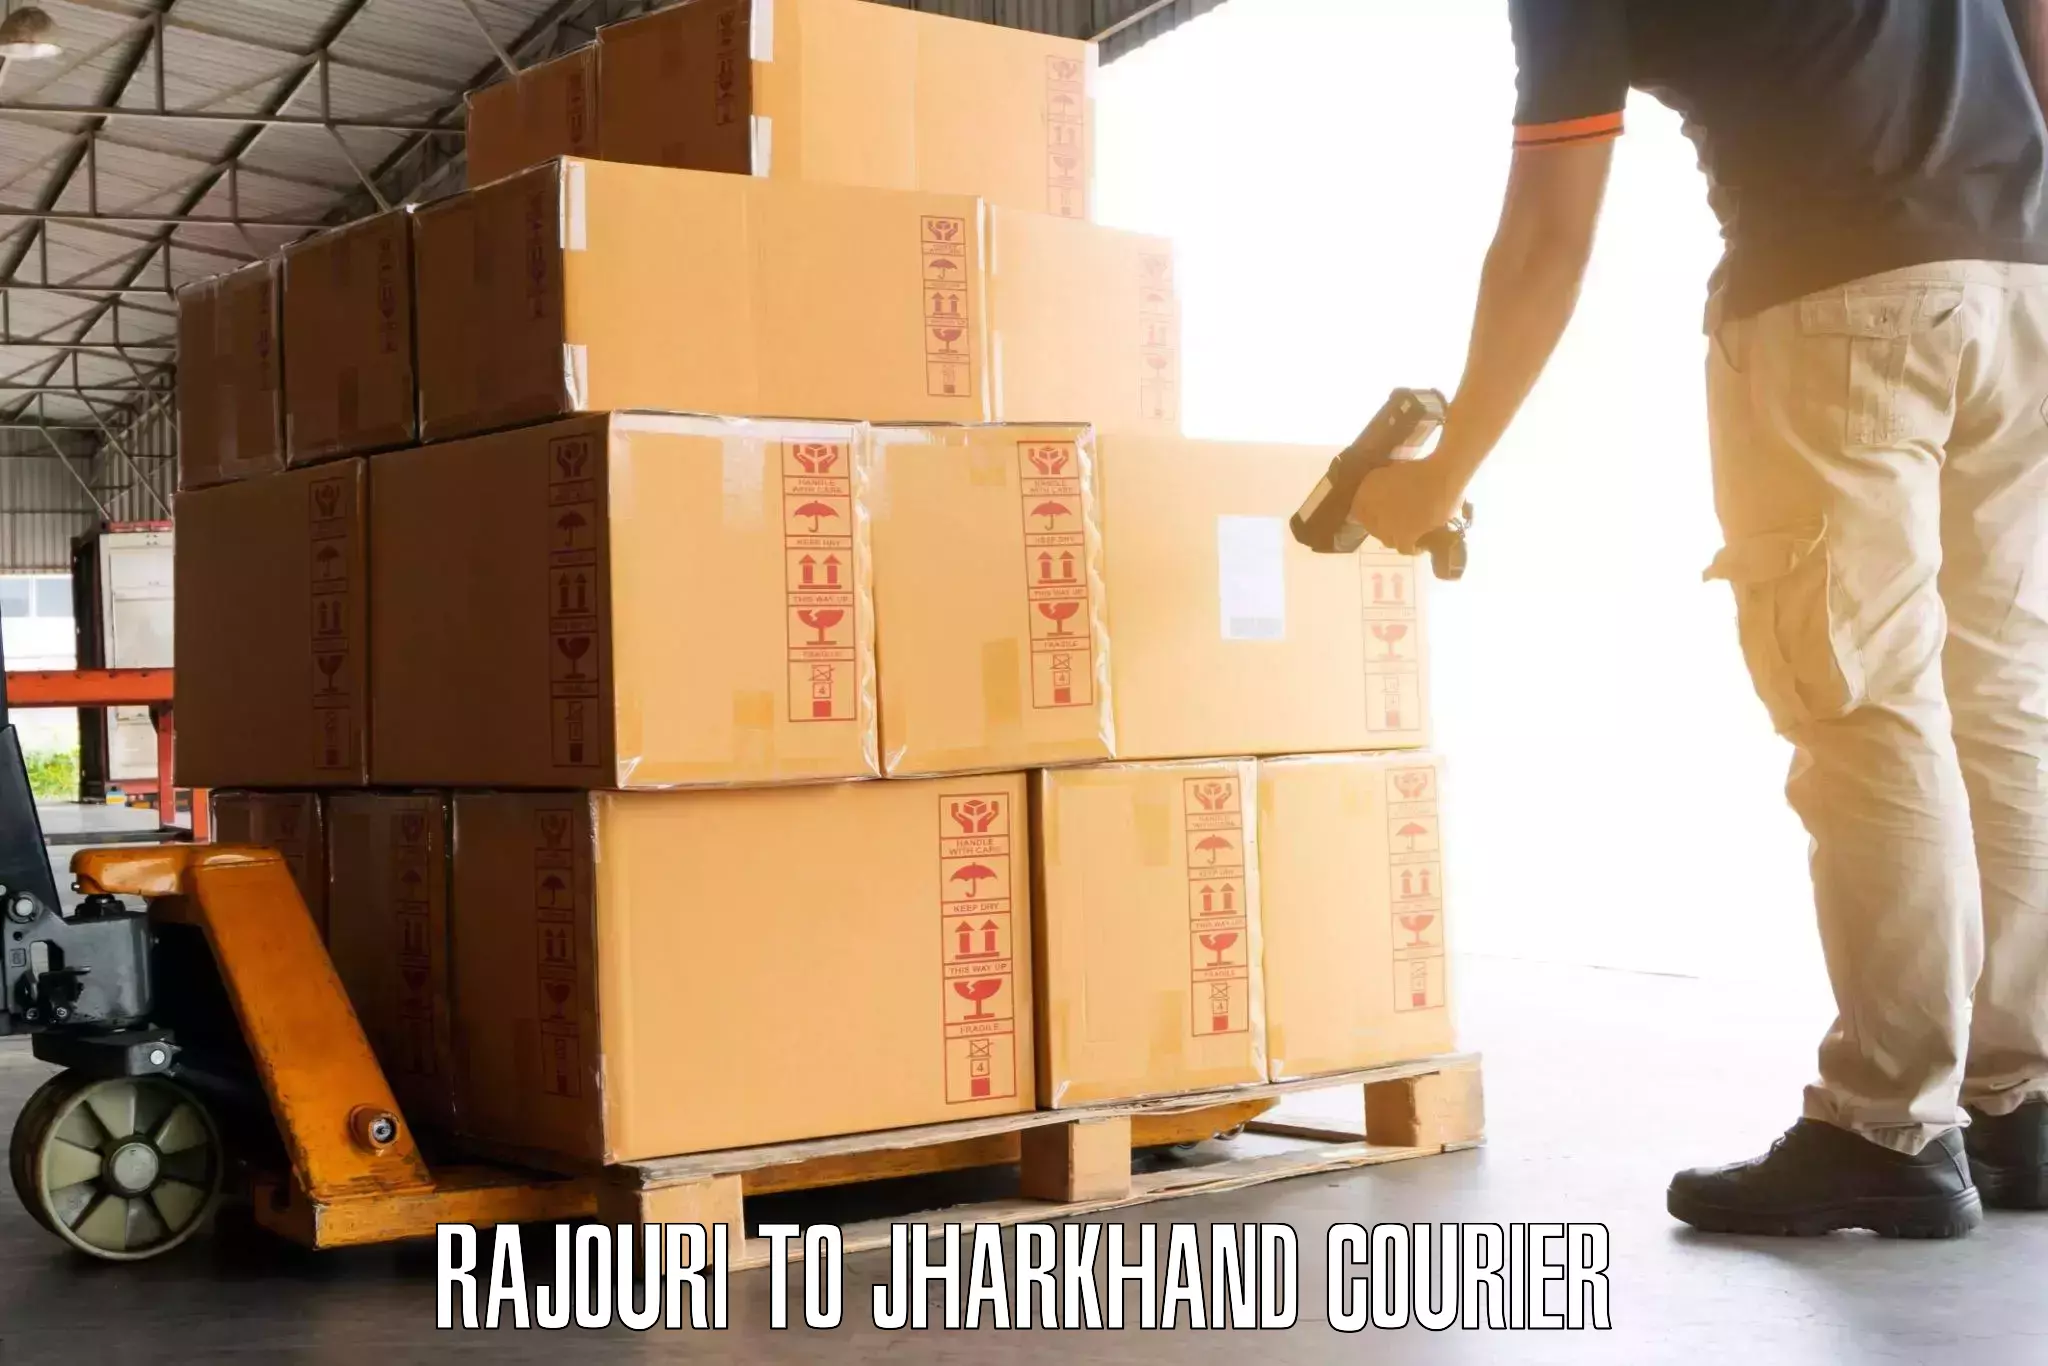 Luggage transport deals Rajouri to Balumath